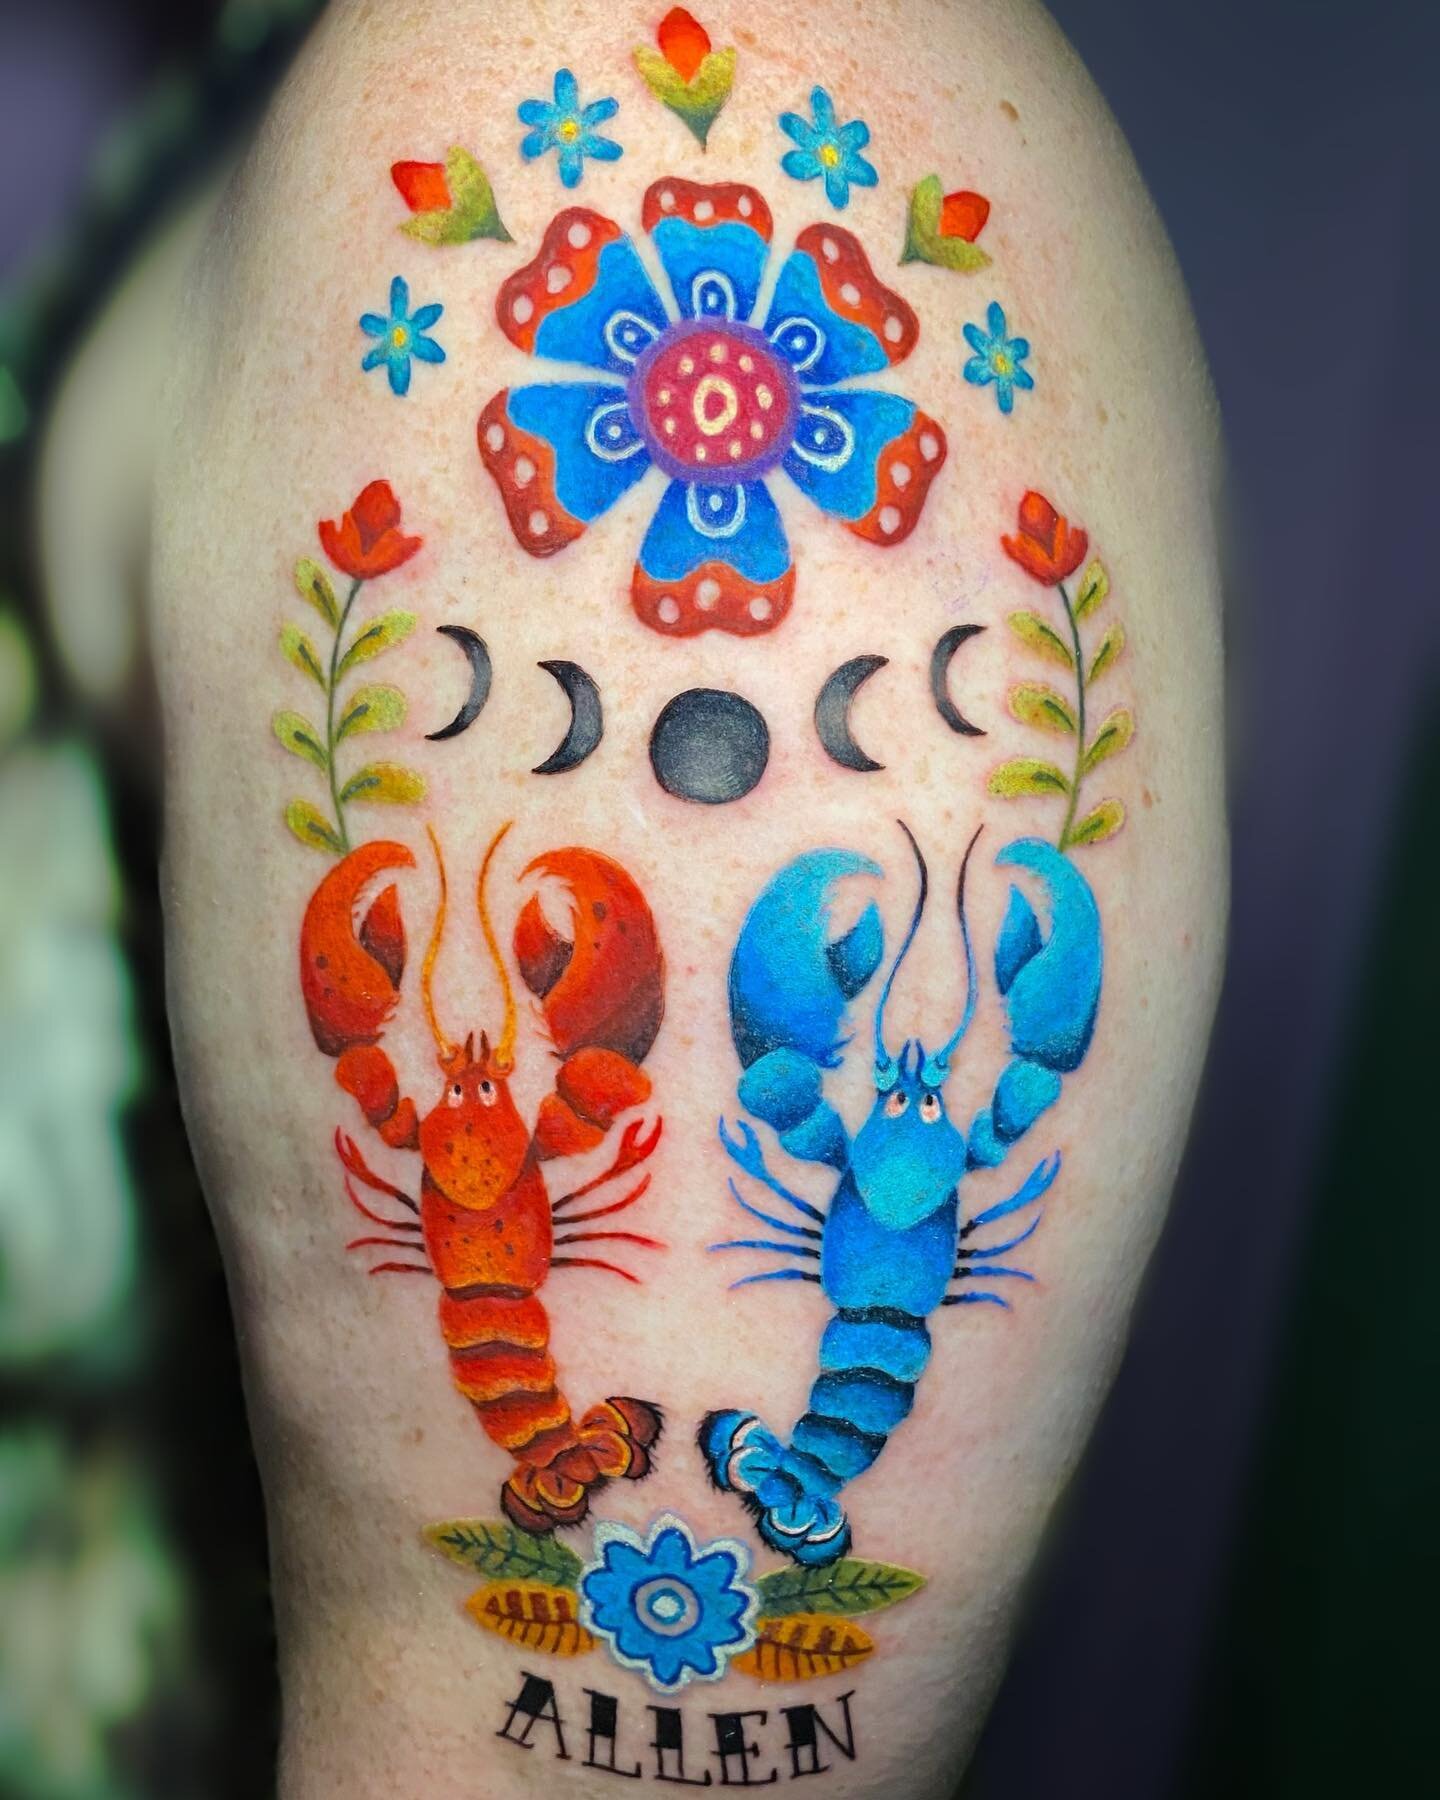 Folk art style lobsters 🦞 🌼 

#lobster #capecod #massachusetts #capecodtattoo #qttr #folkart #colorful #tattoo #tattooshop